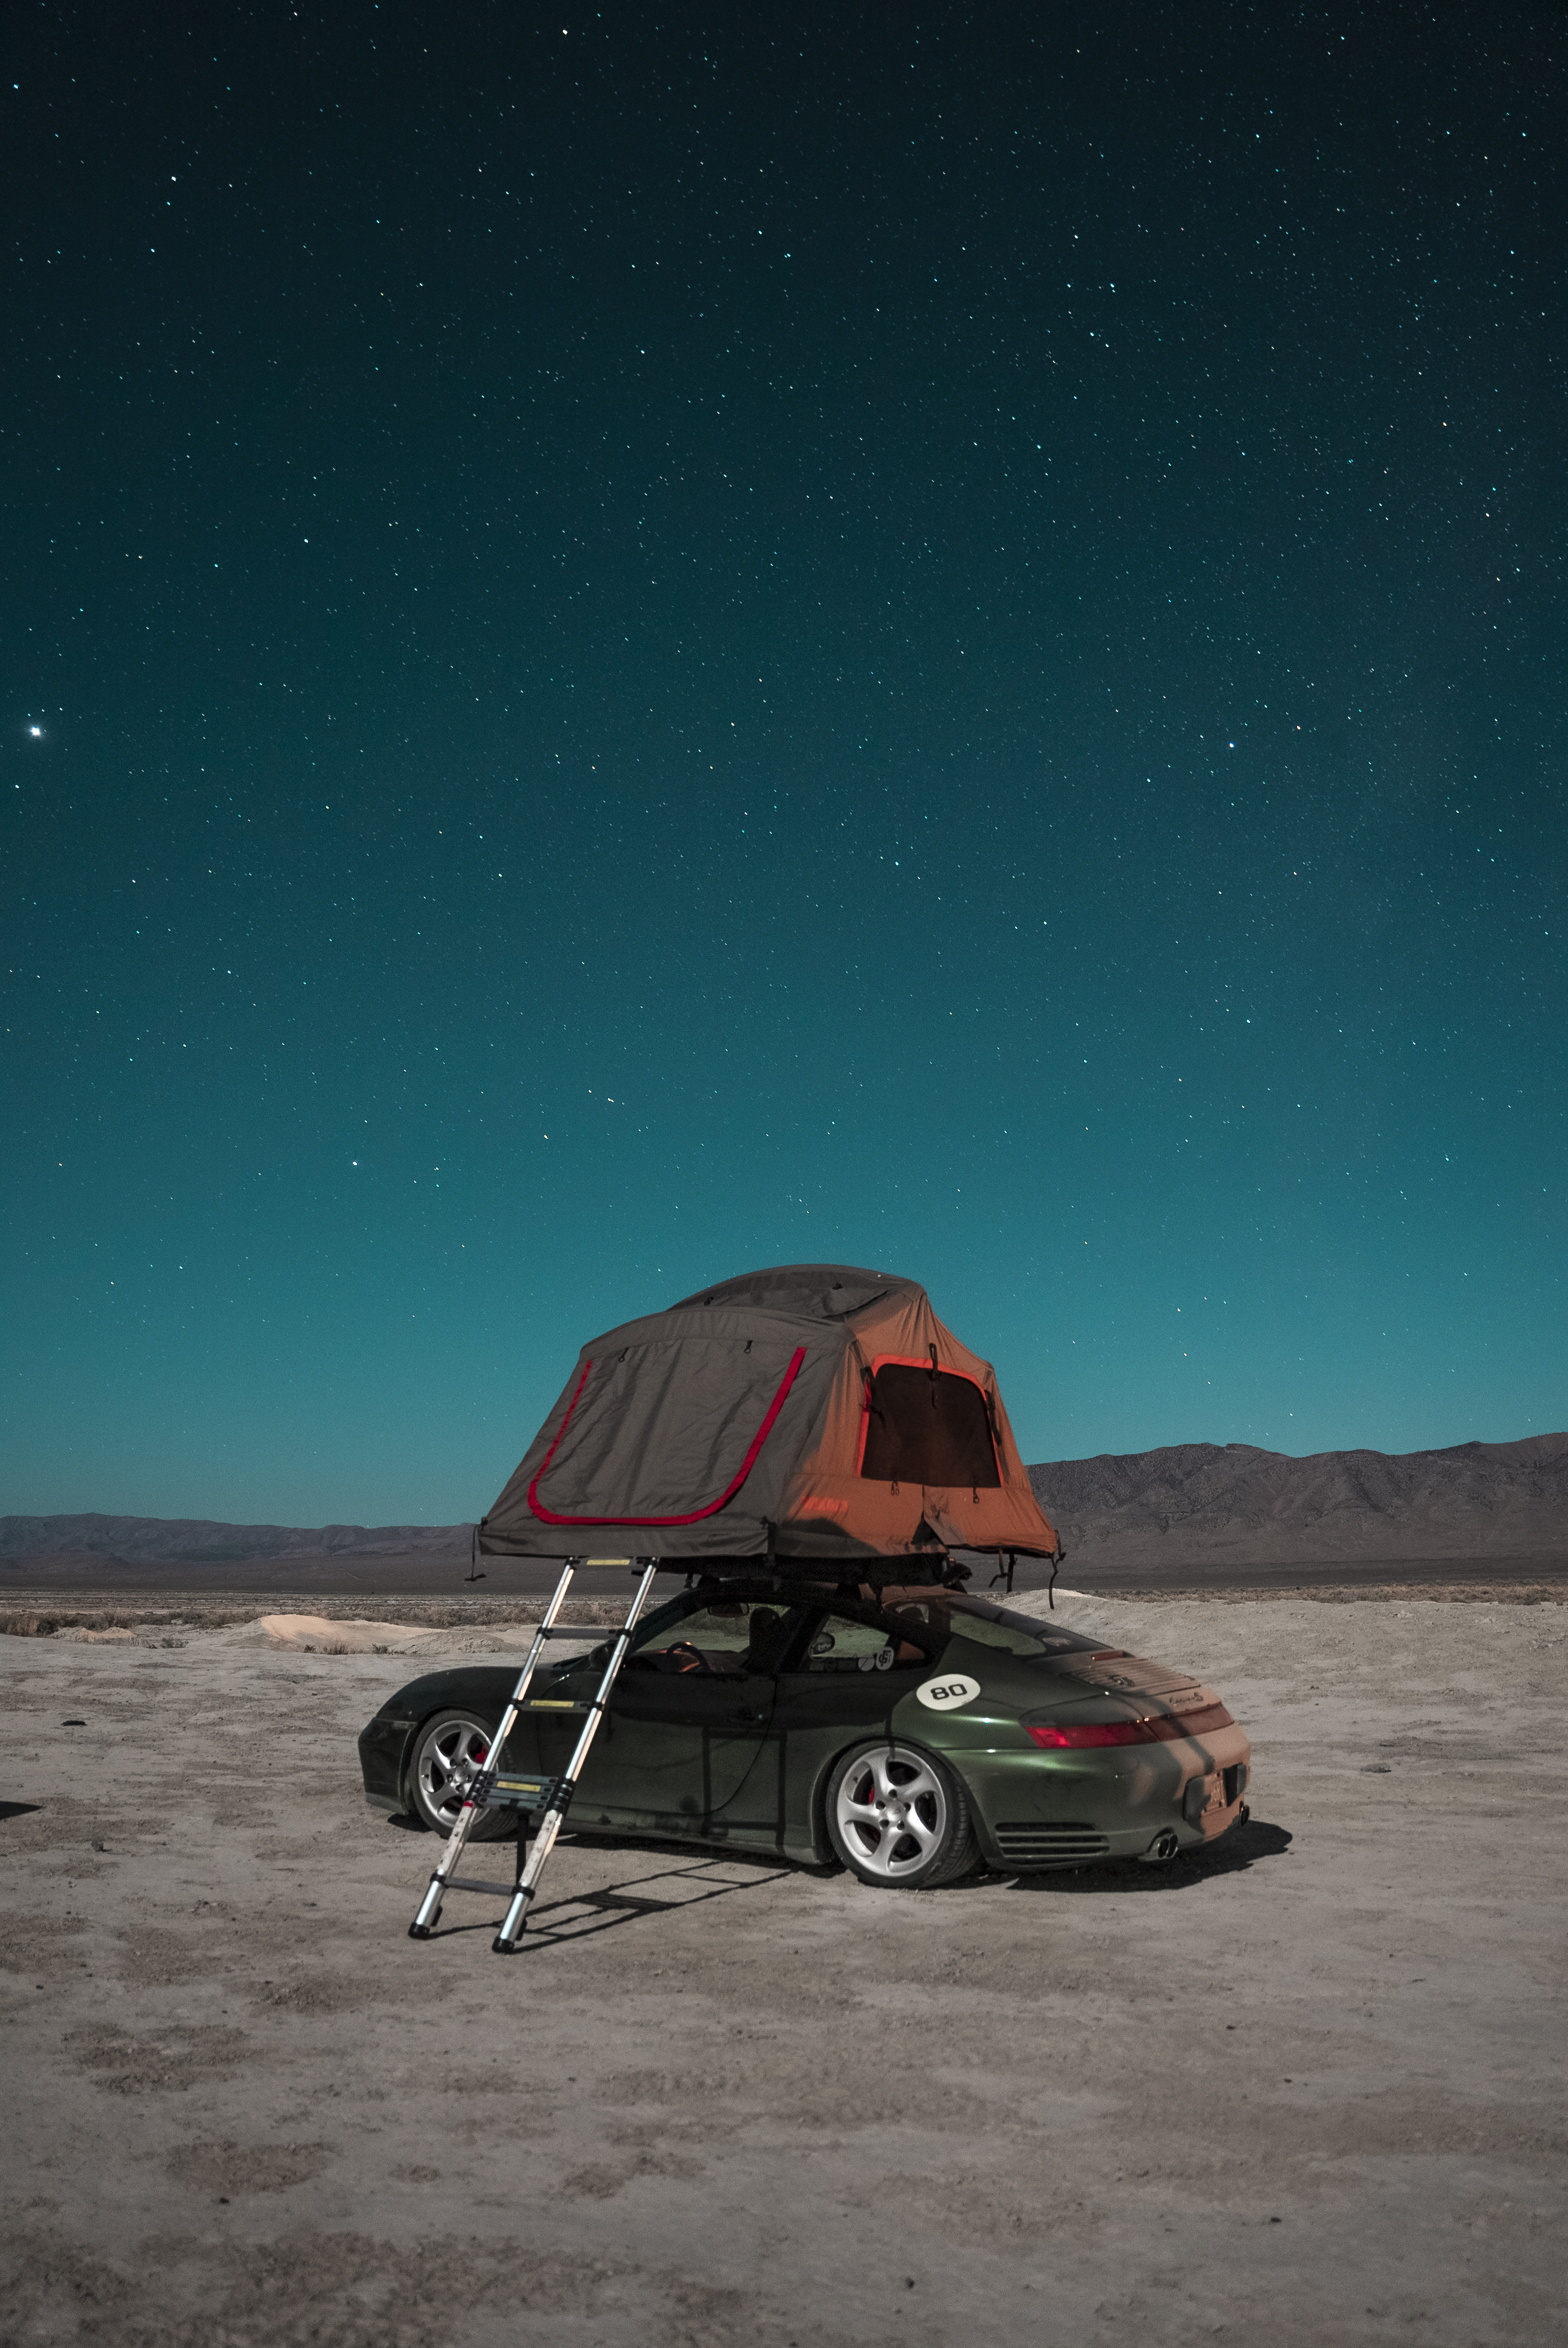 Porsche with roof tent in desert under starlit sky